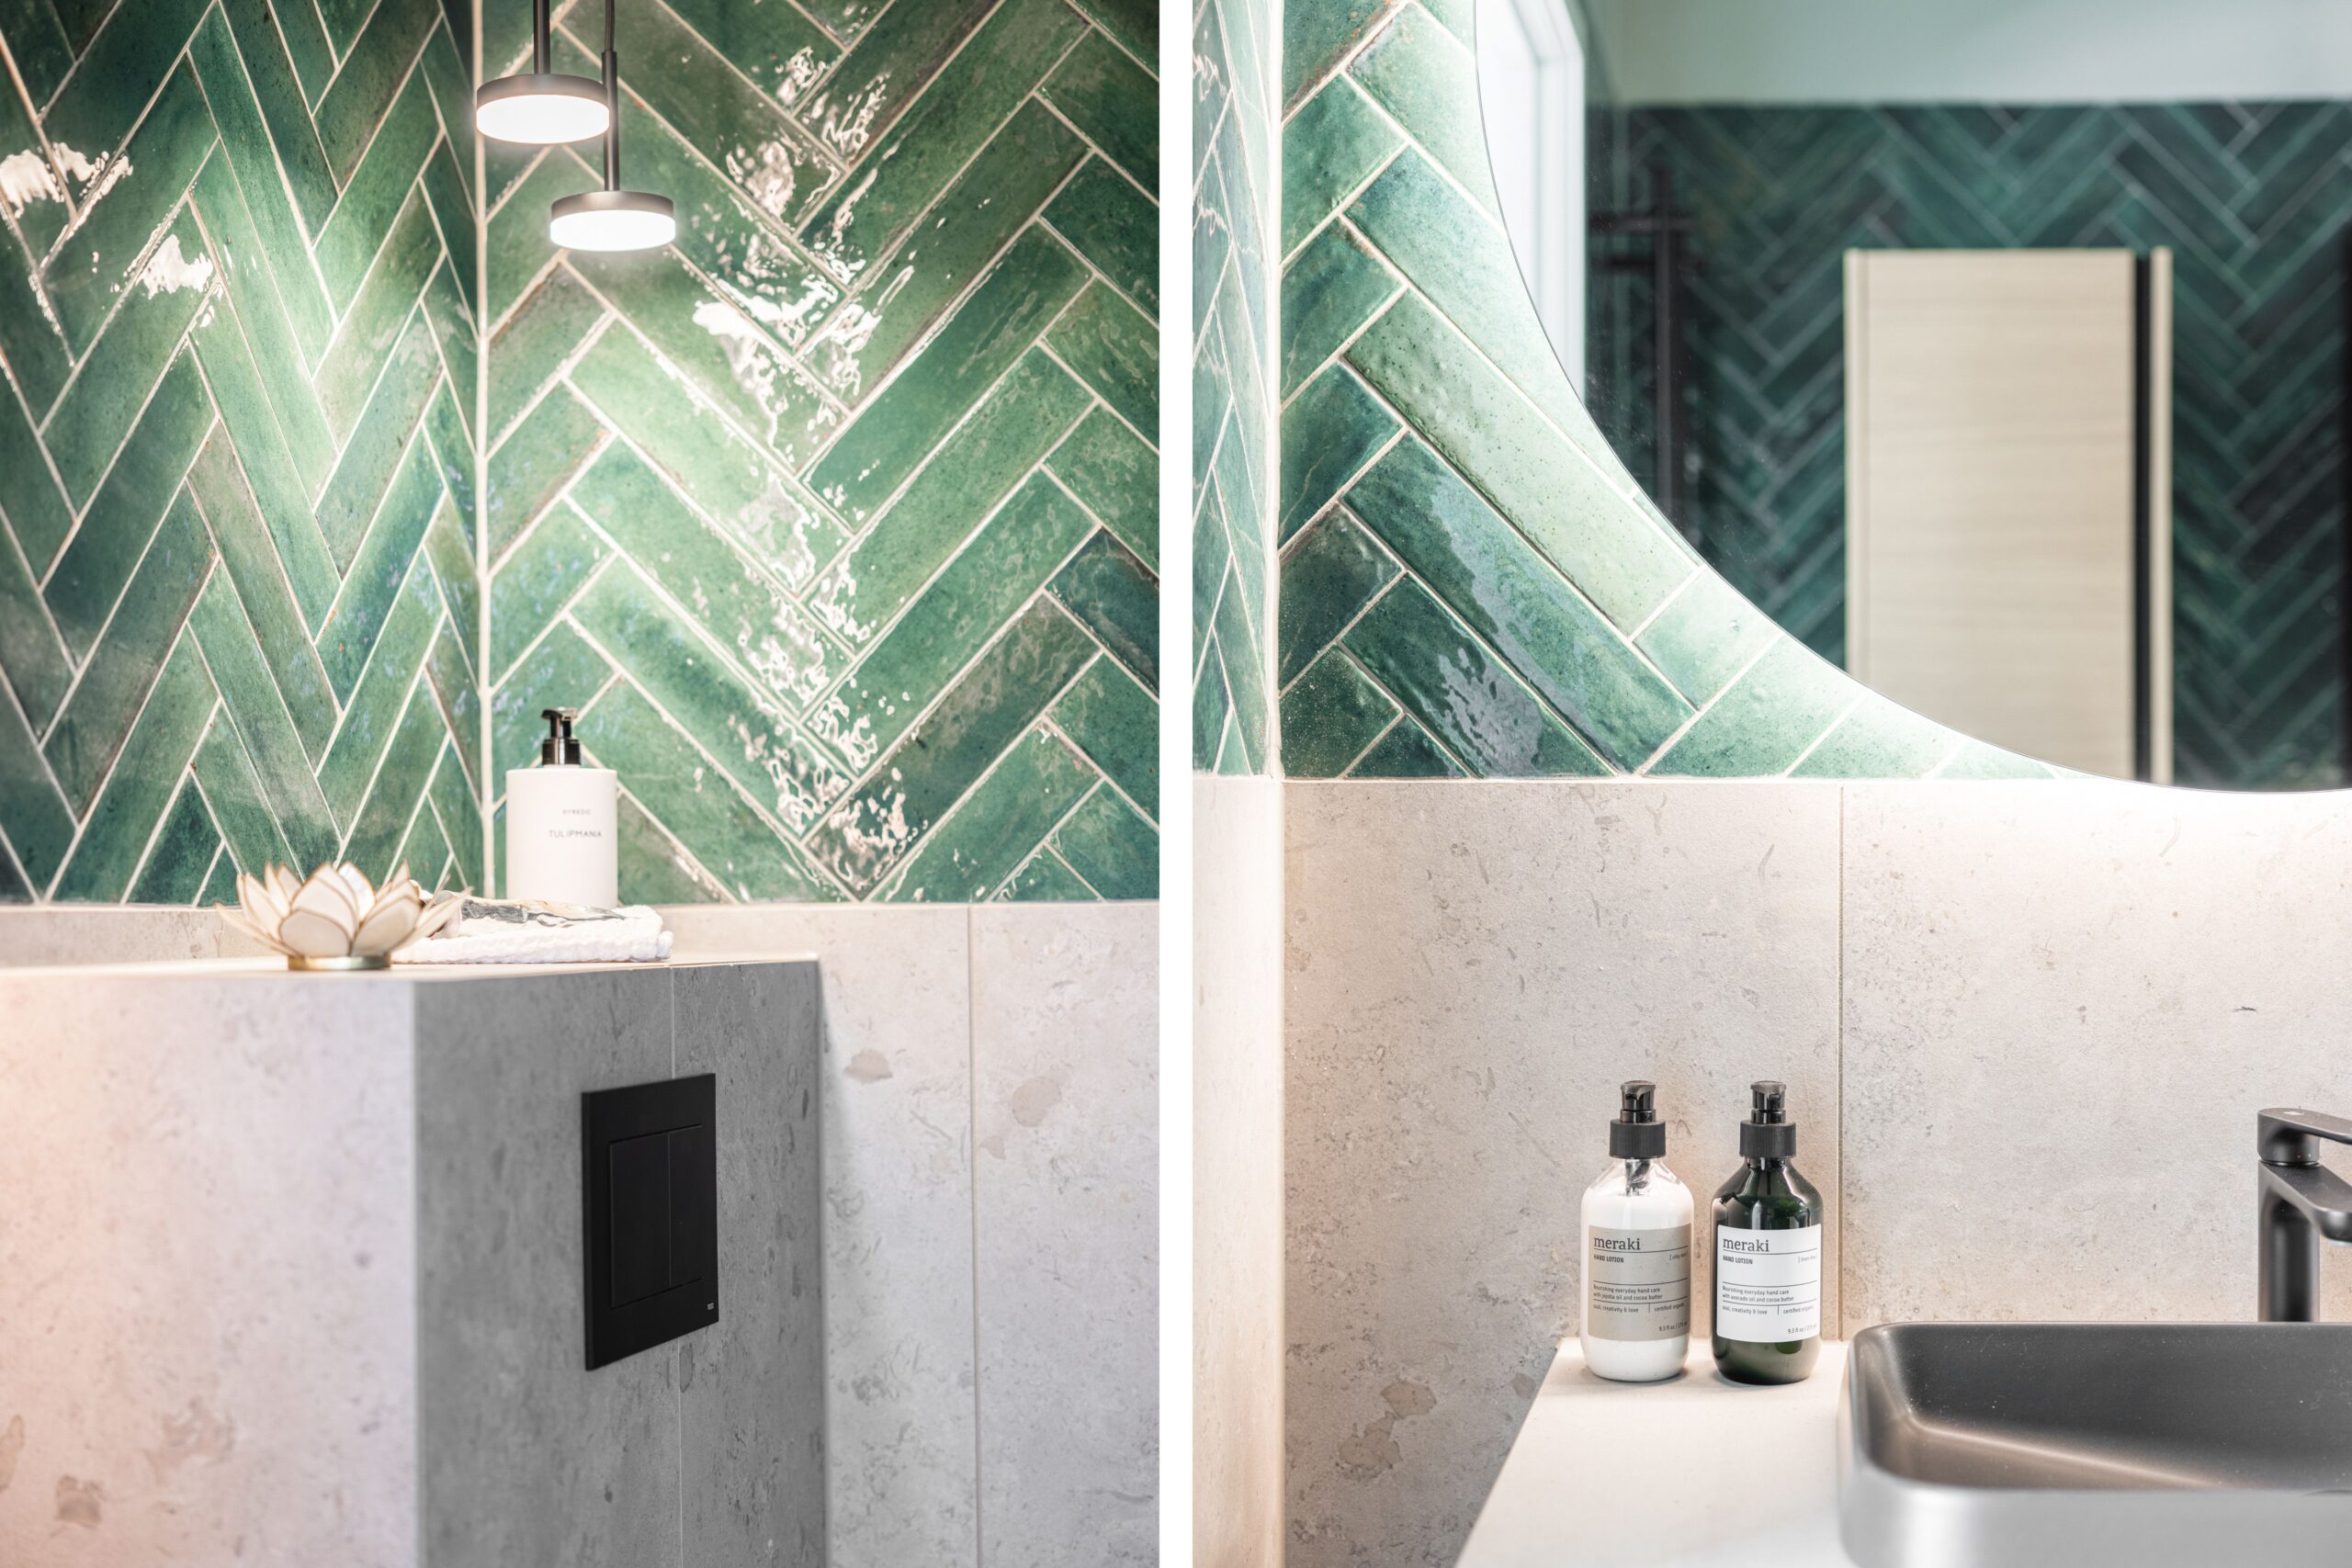 Ett uppfräschat badrum med dramatiskt grönt kakel i chevronmönster och en neutral bänkskiva som återspeglar en lyxig och samtidigt jordnära design.